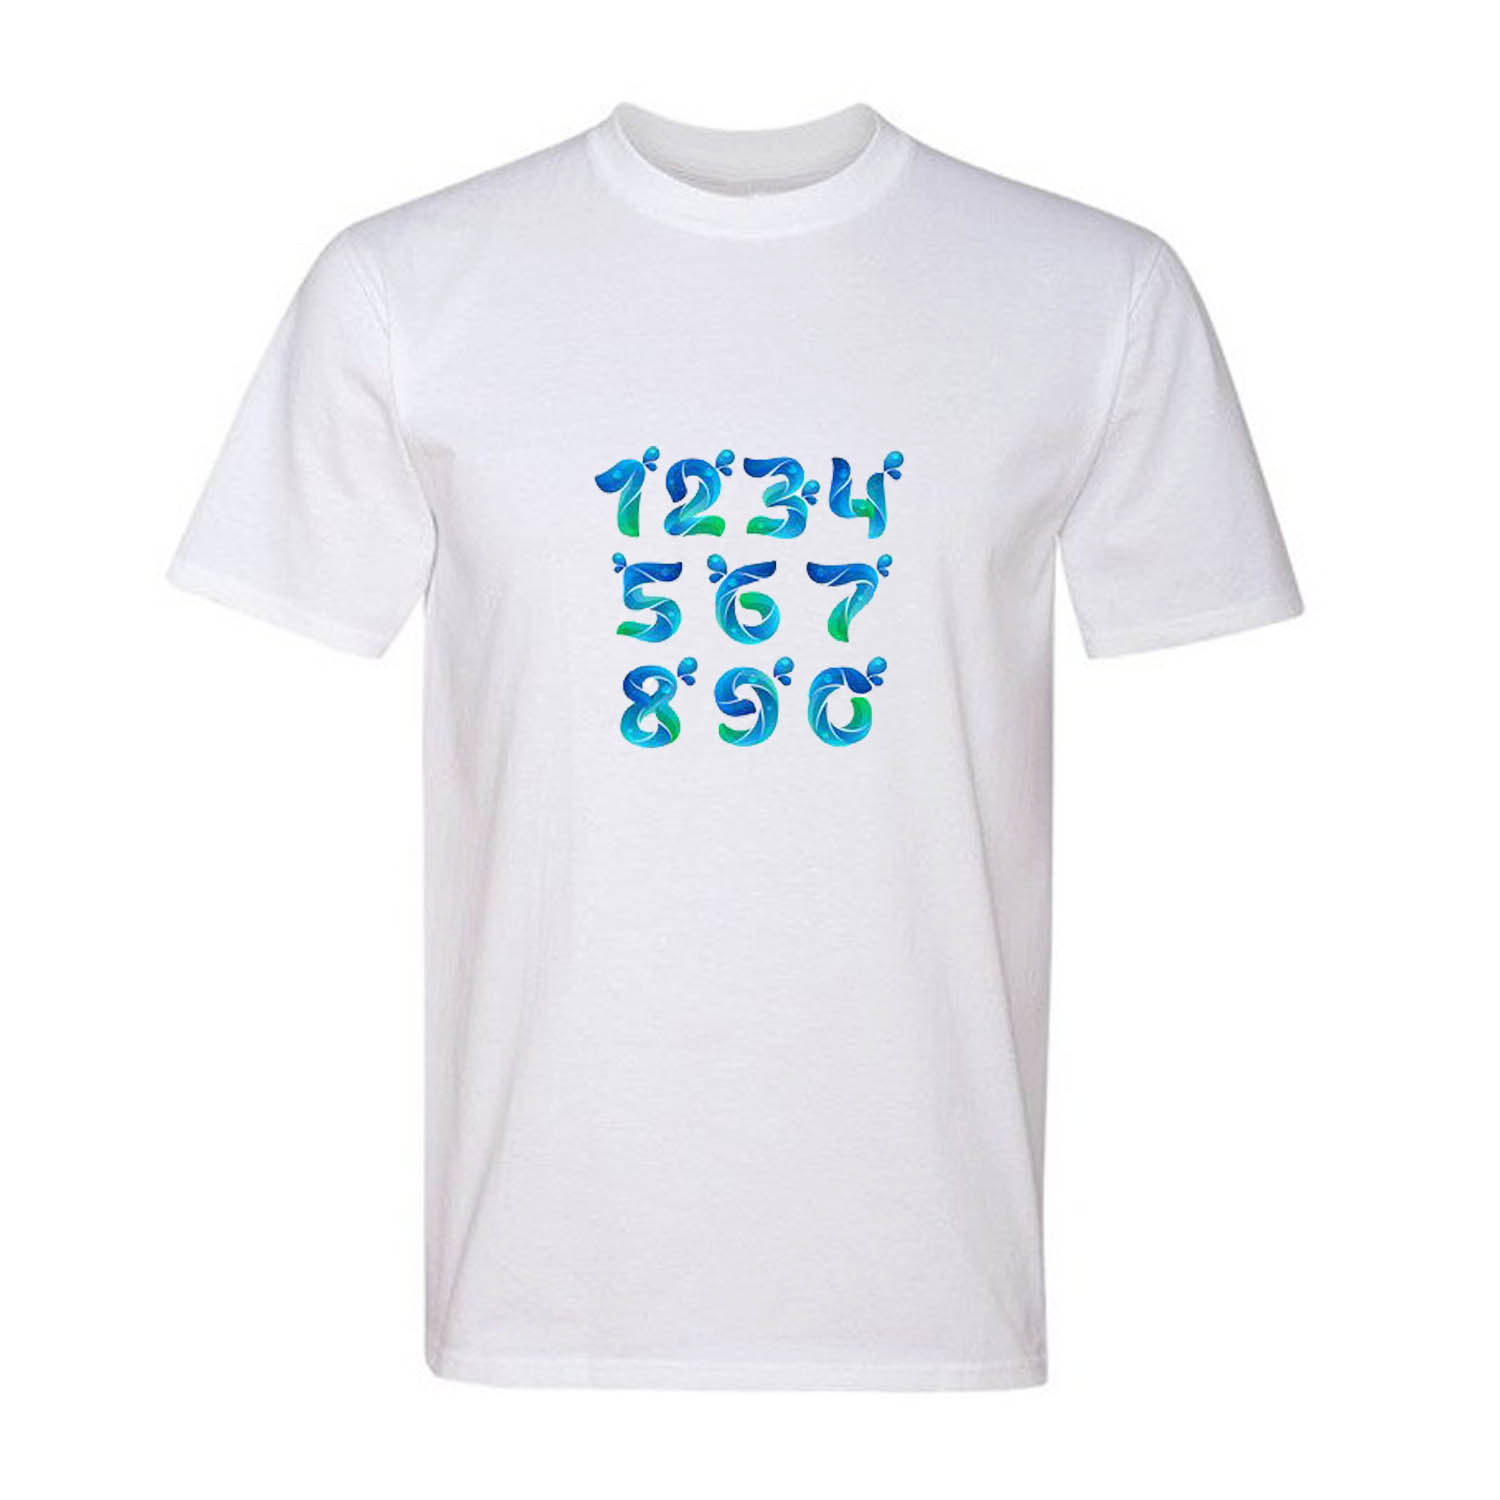 تی شرت آستین کوتاه مردانه مدل T006 رنگ سفید